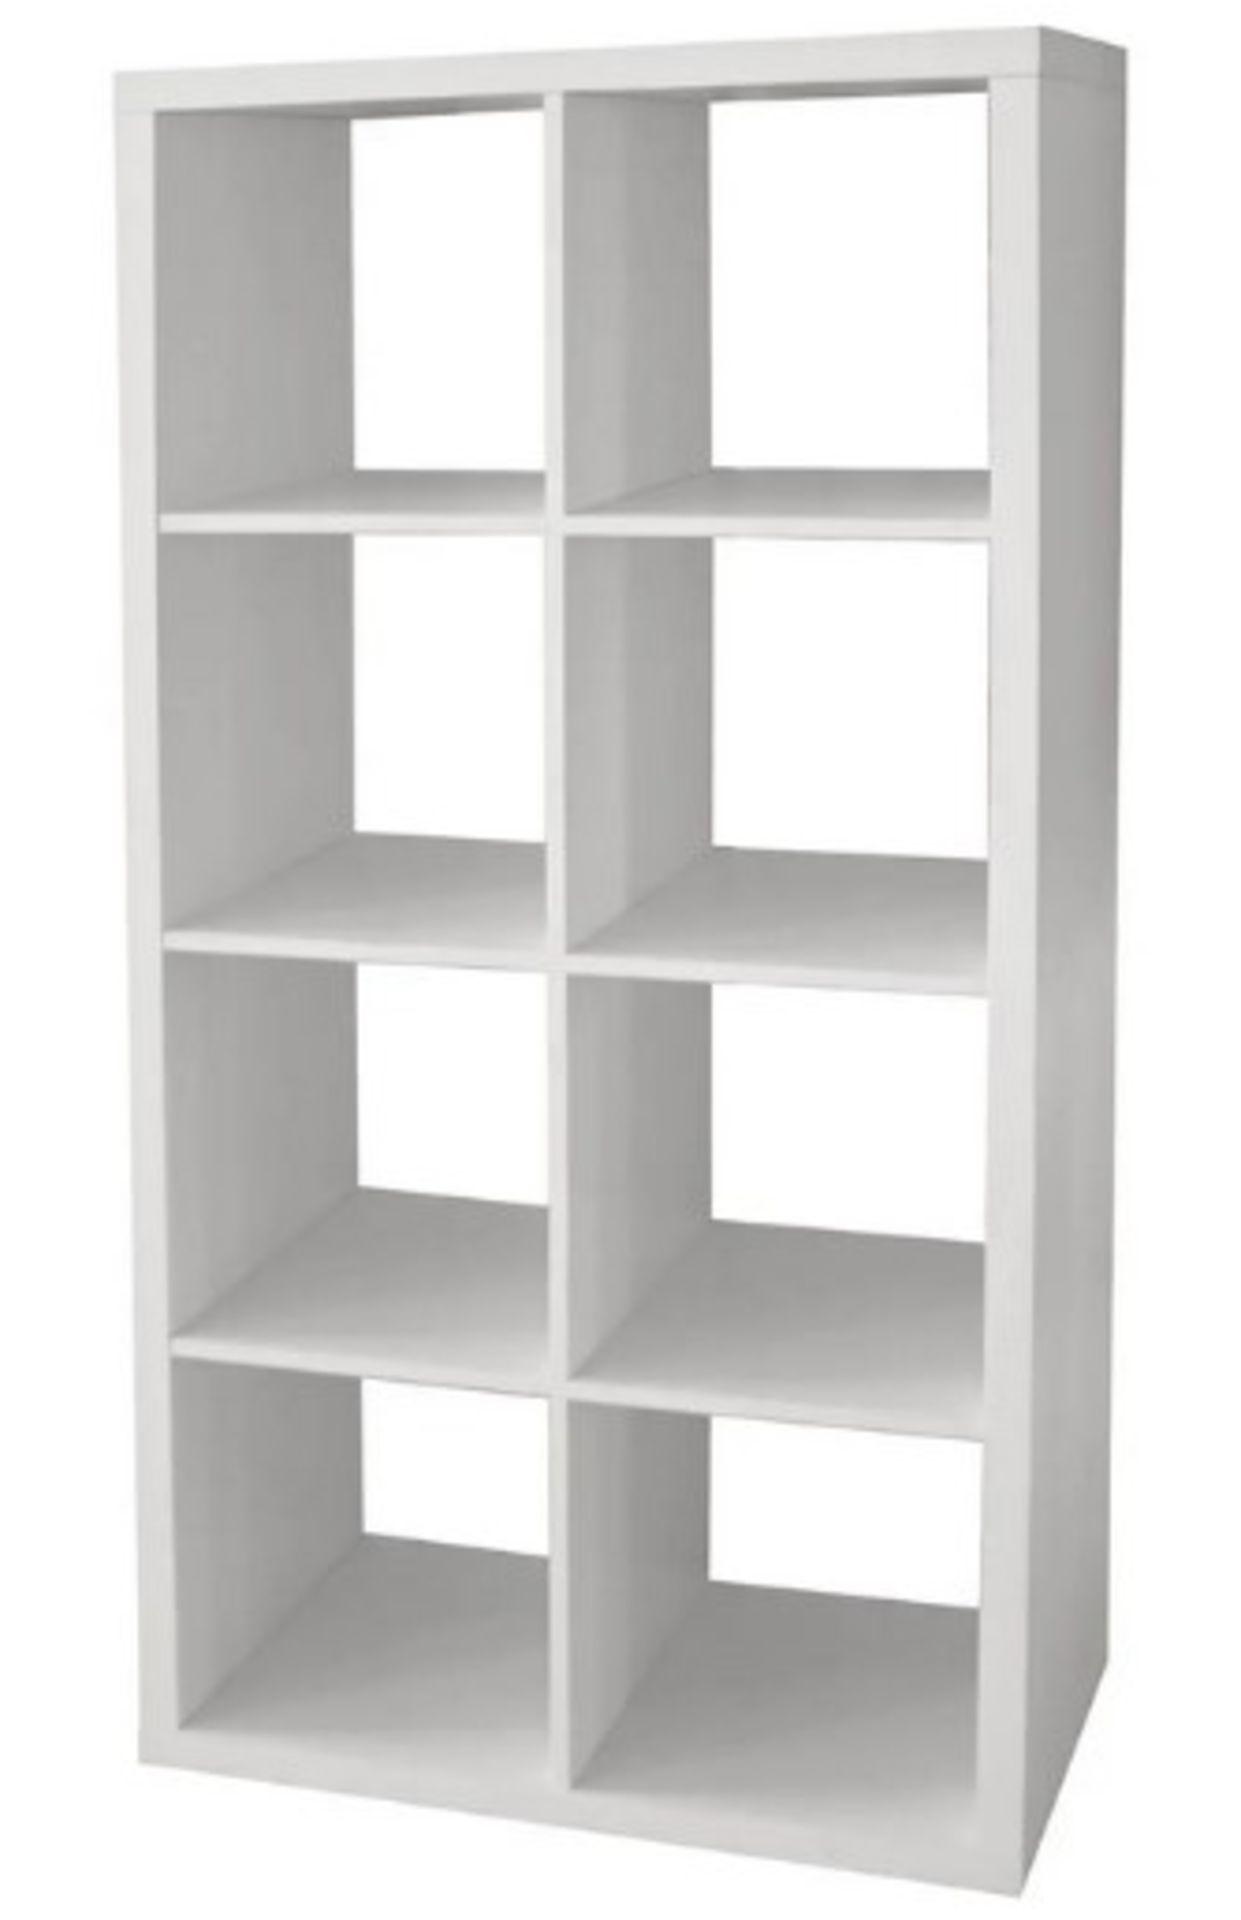 (106/Mez) Living Elements Clever Cube 2x4 Cube Storage Unit White Matt Finish. 8 Separate Compart...